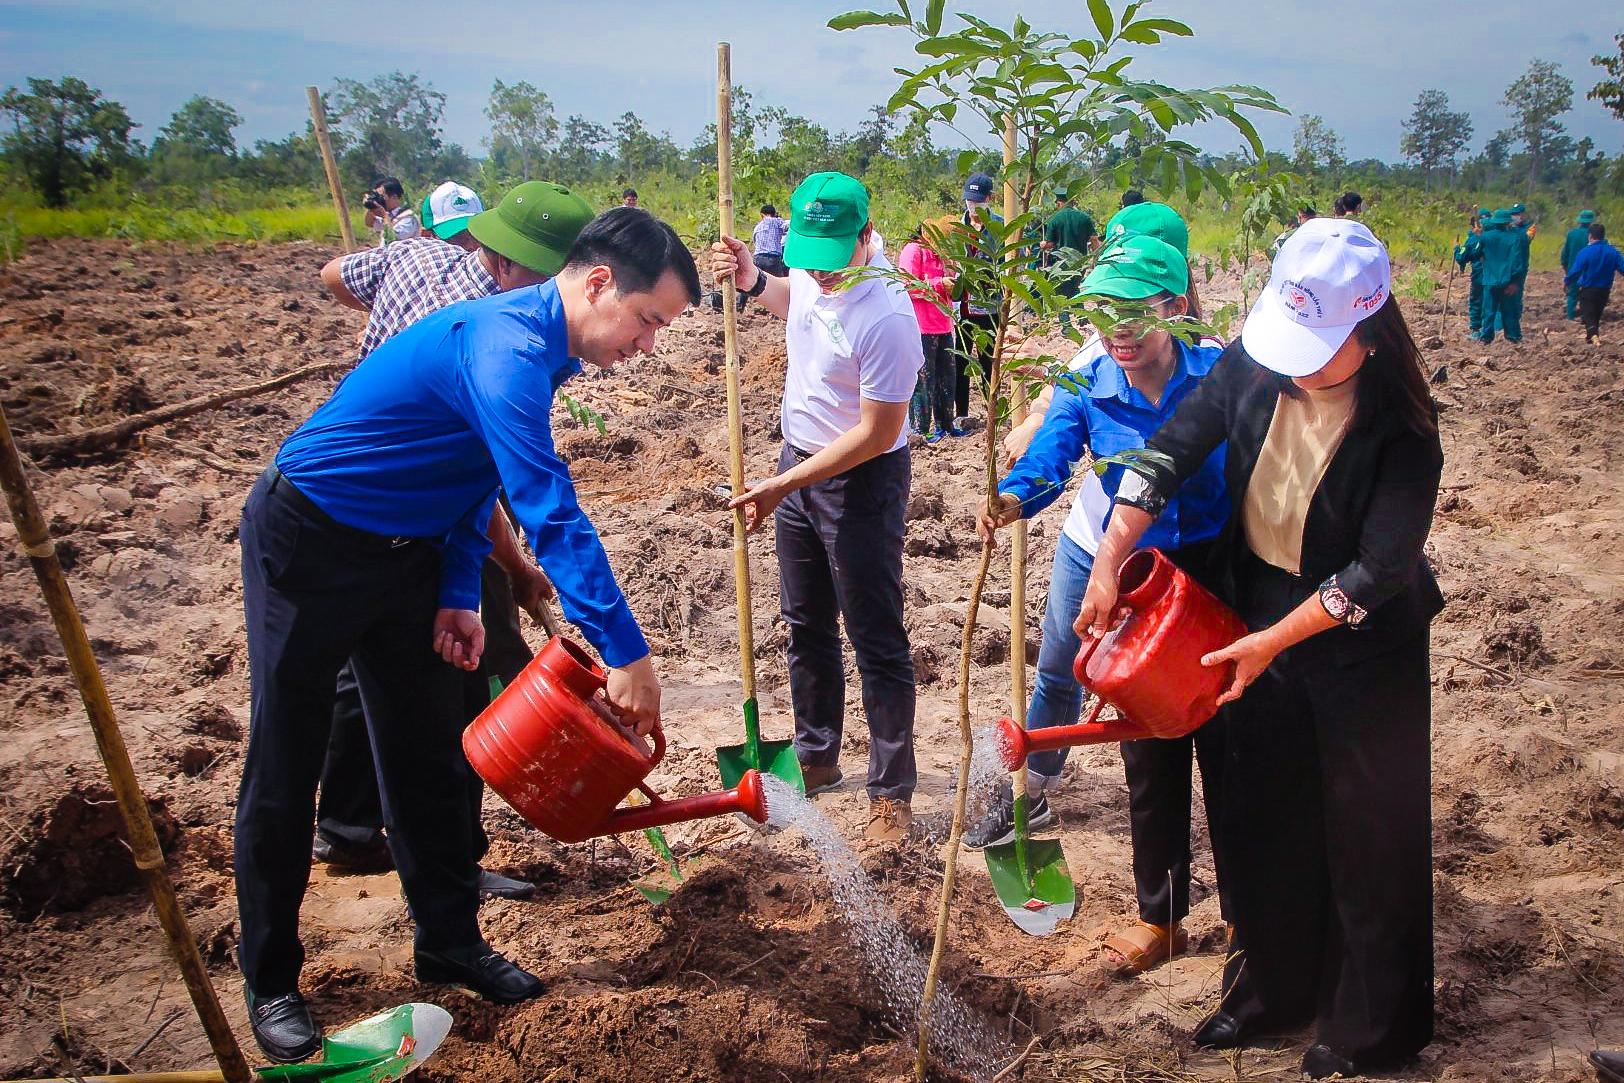 Tổng kết “Triệu cây xanh - Vì một Việt Nam xanh&quot; 2022: Nhiều “trái ngọt” từ nỗ lực bền bỉ vì cộng đồng - Ảnh 2.